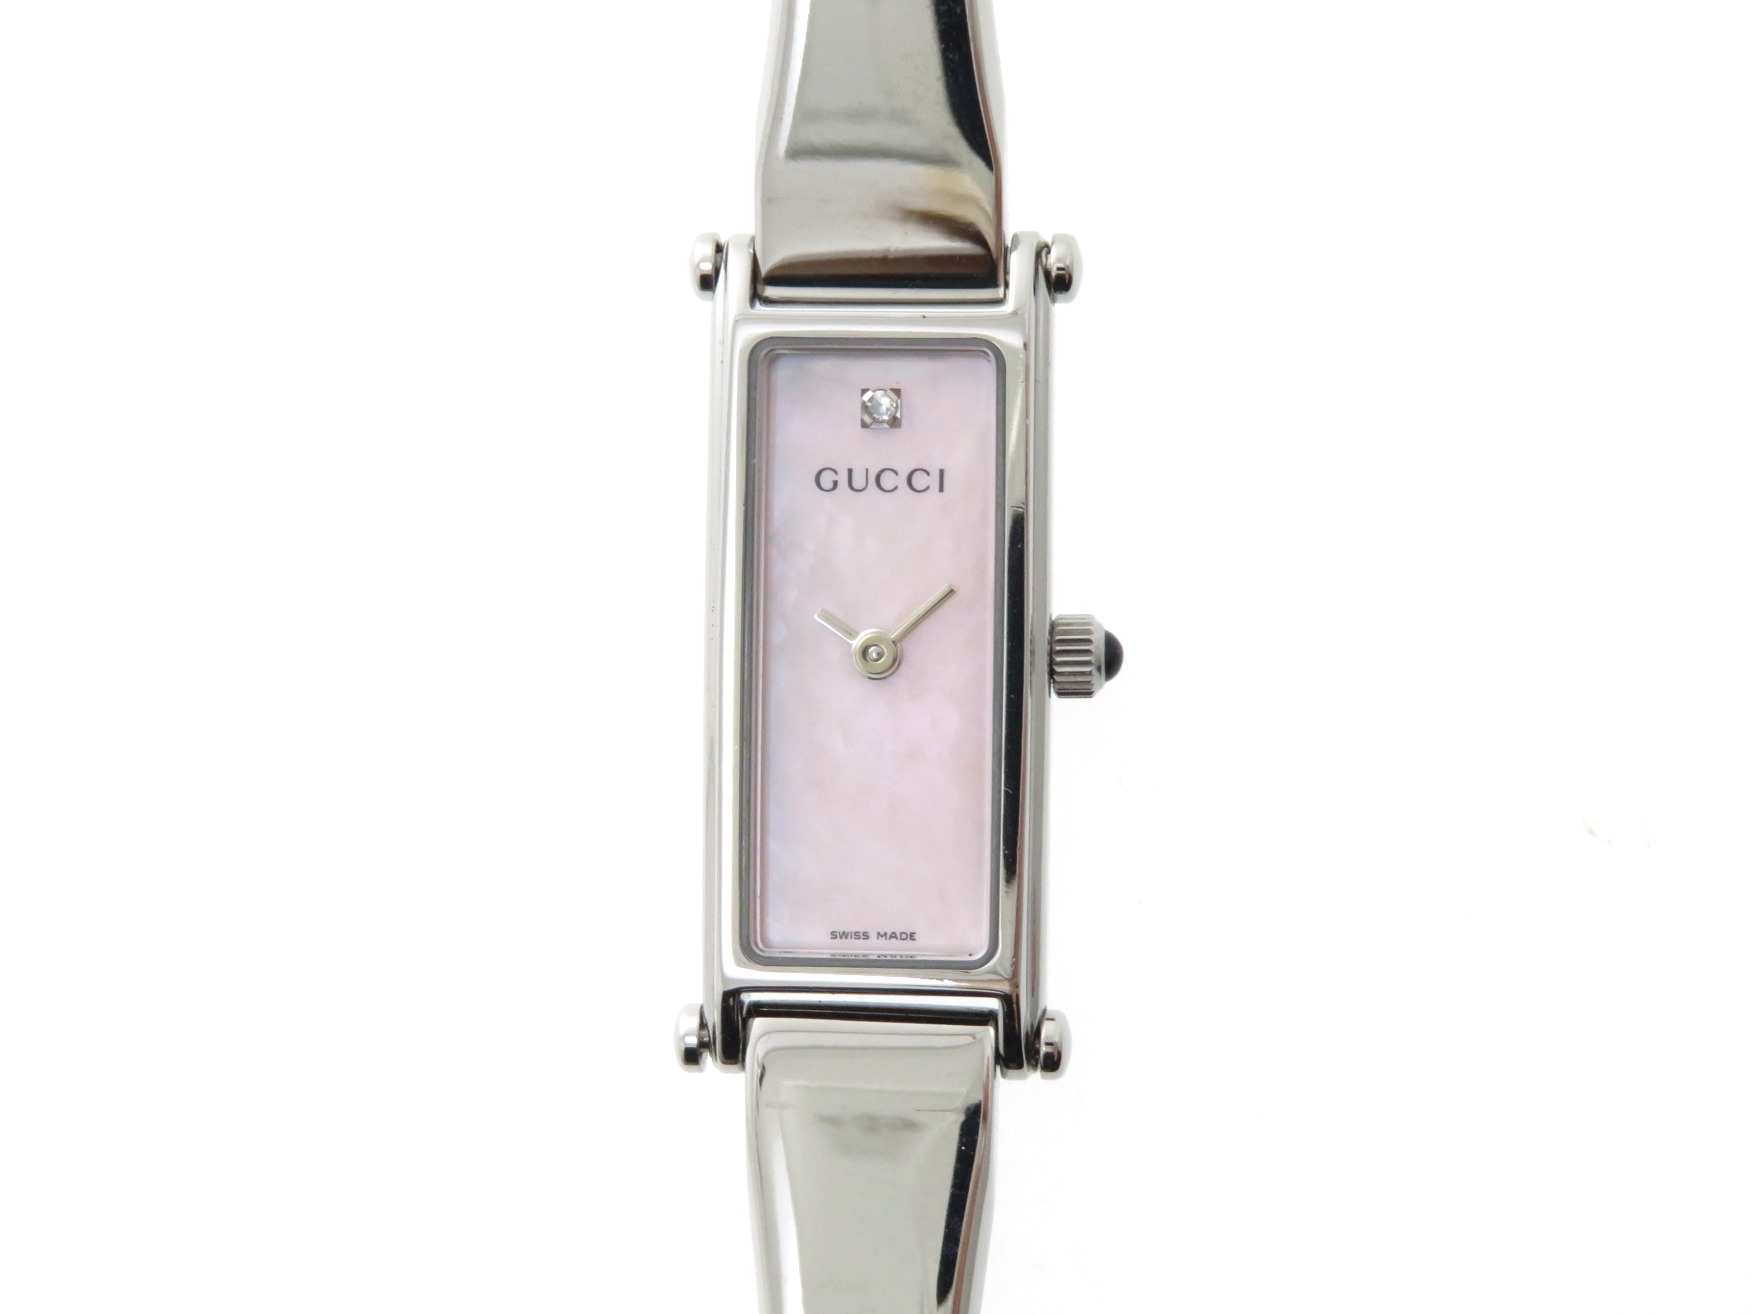 GUCCI グッチのレディース腕時計 ピンクシェル文字盤 1500L-